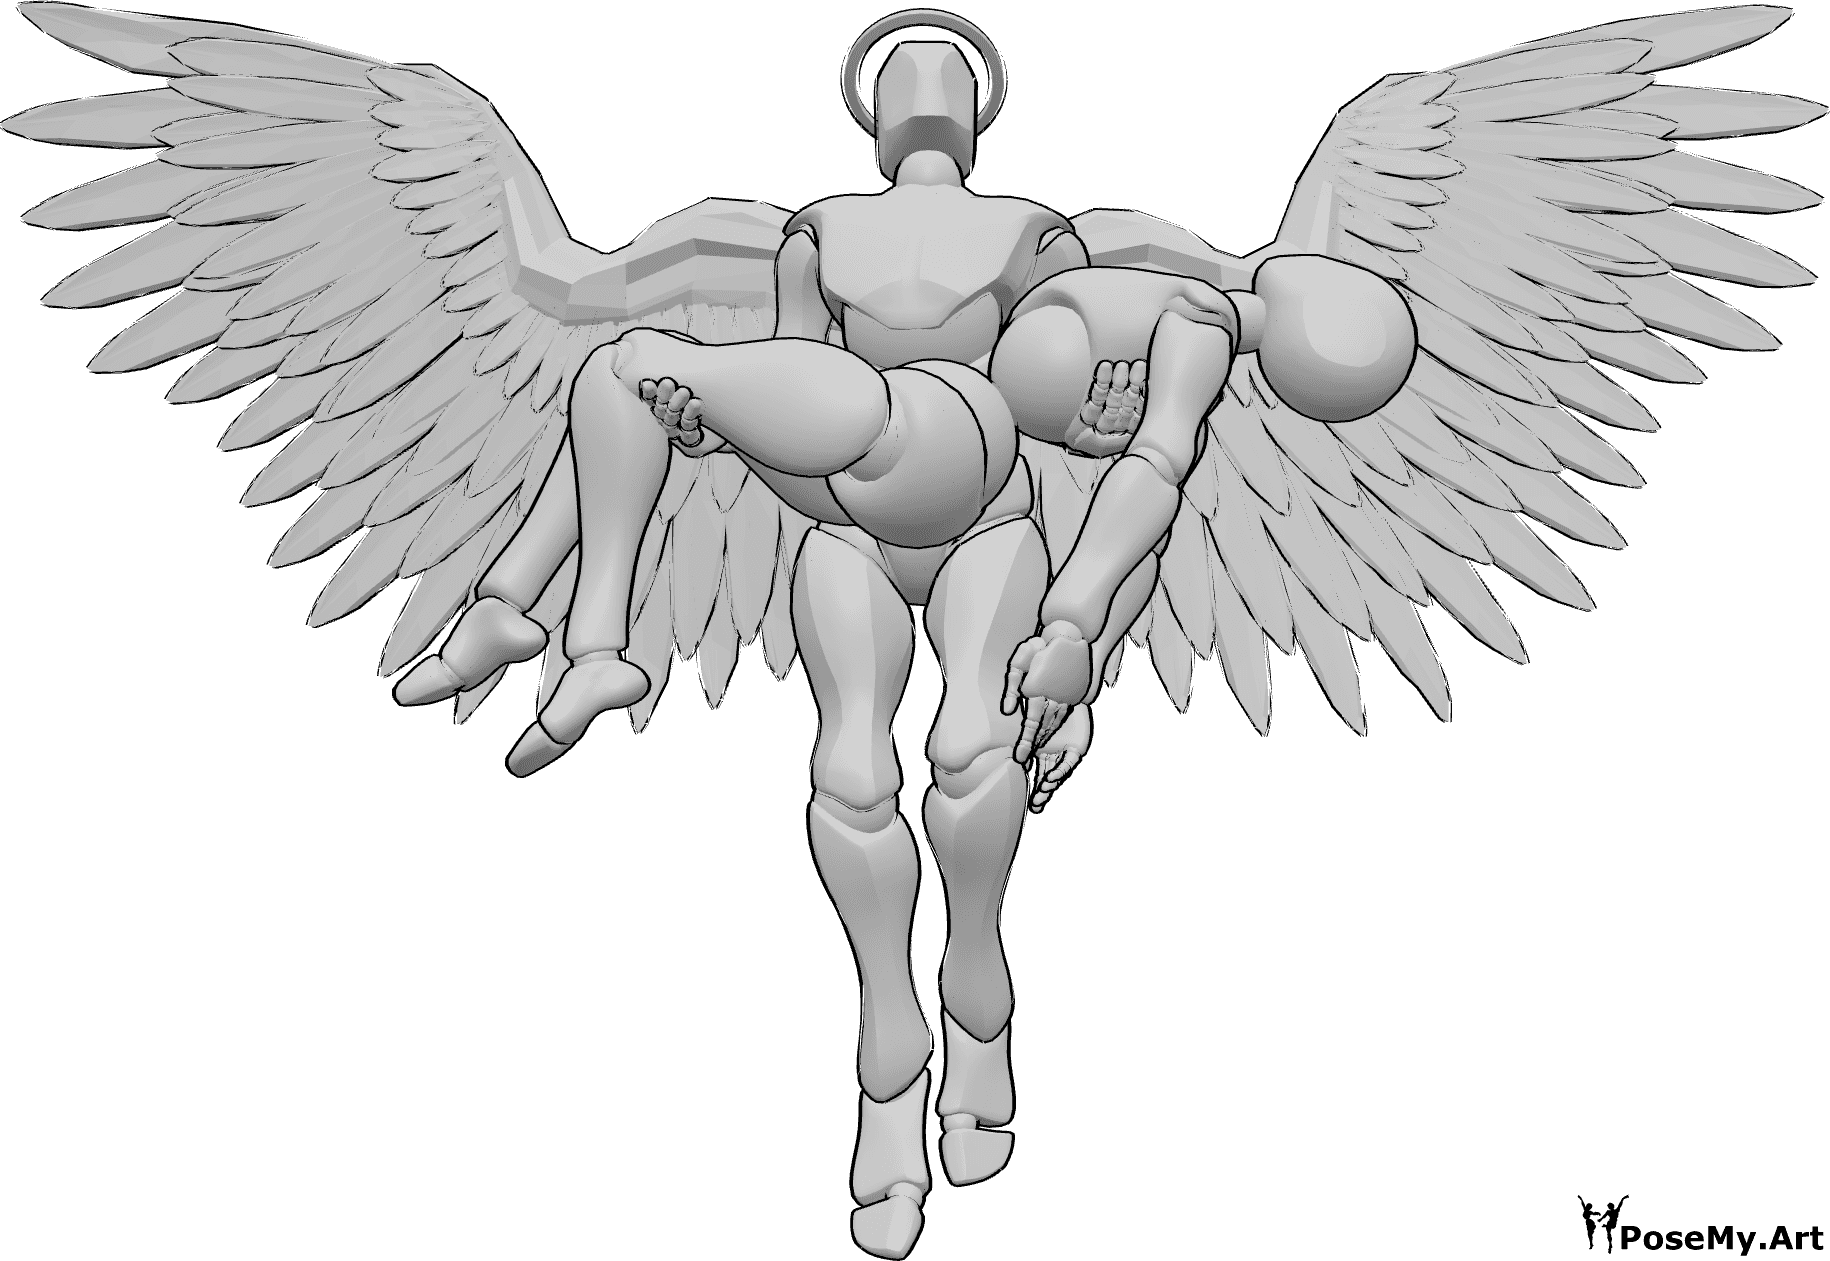 Posen-Referenz- Engel in weiblicher Pose - Männlicher Engel hält eine Frau mit zwei Händen und fliegt nach oben